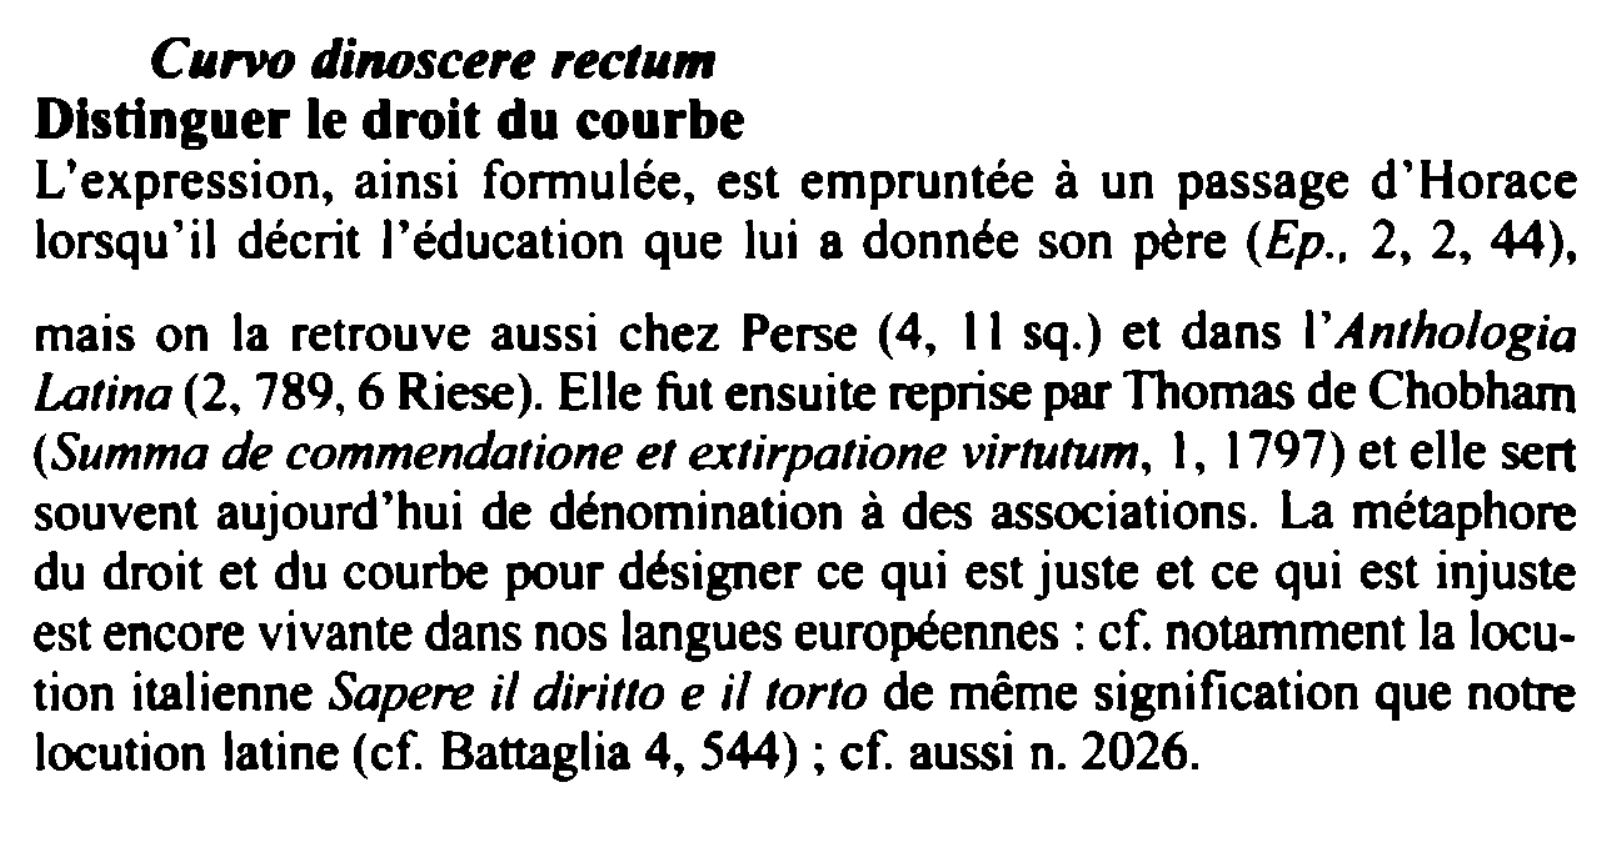 Prévisualisation du document C11rvo dinoscere rectum

Distinguer le droit du courbe
Ltexpression, ainsi foi 111ulée, est empruntée à un passage d'Horace
lorsqu'il décrit...